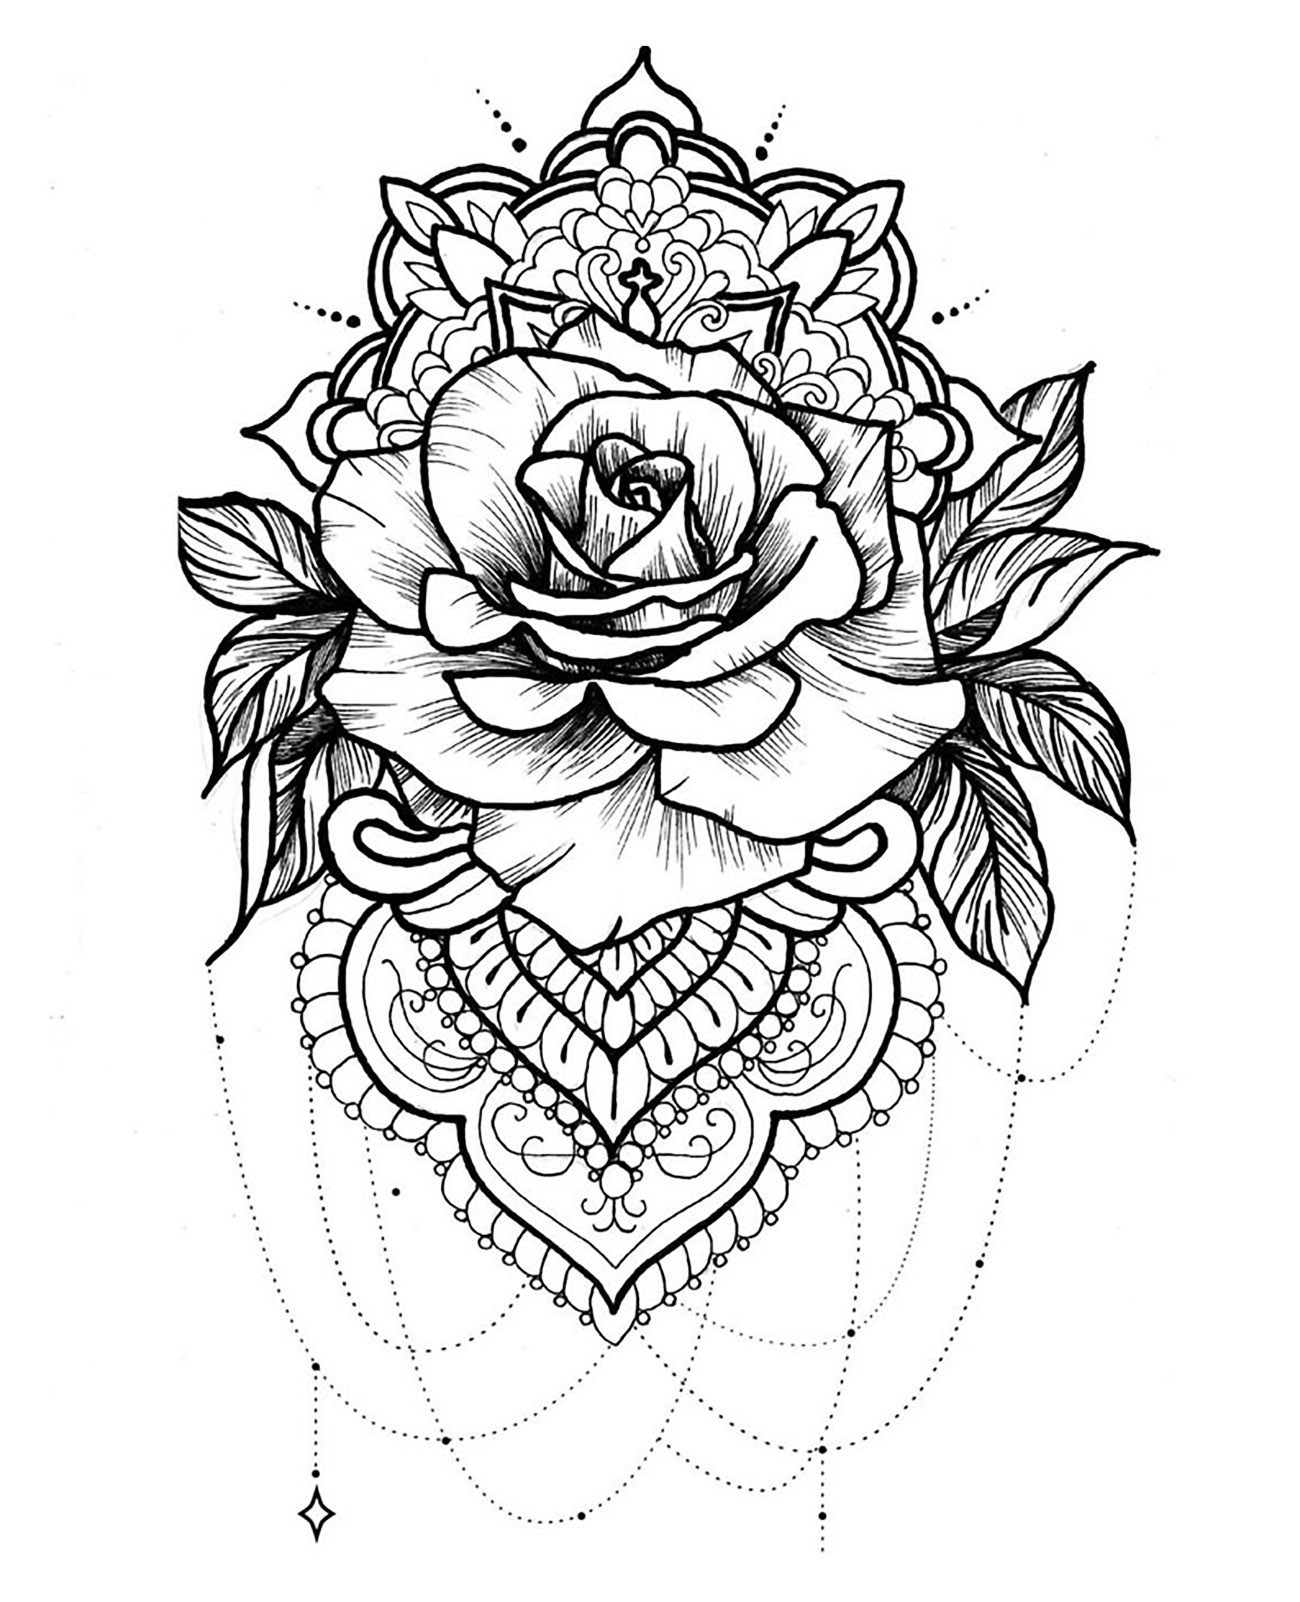 Ein Mandala mit einer prächtigen Rose, Blättern, Juwelen und eleganten Mustern